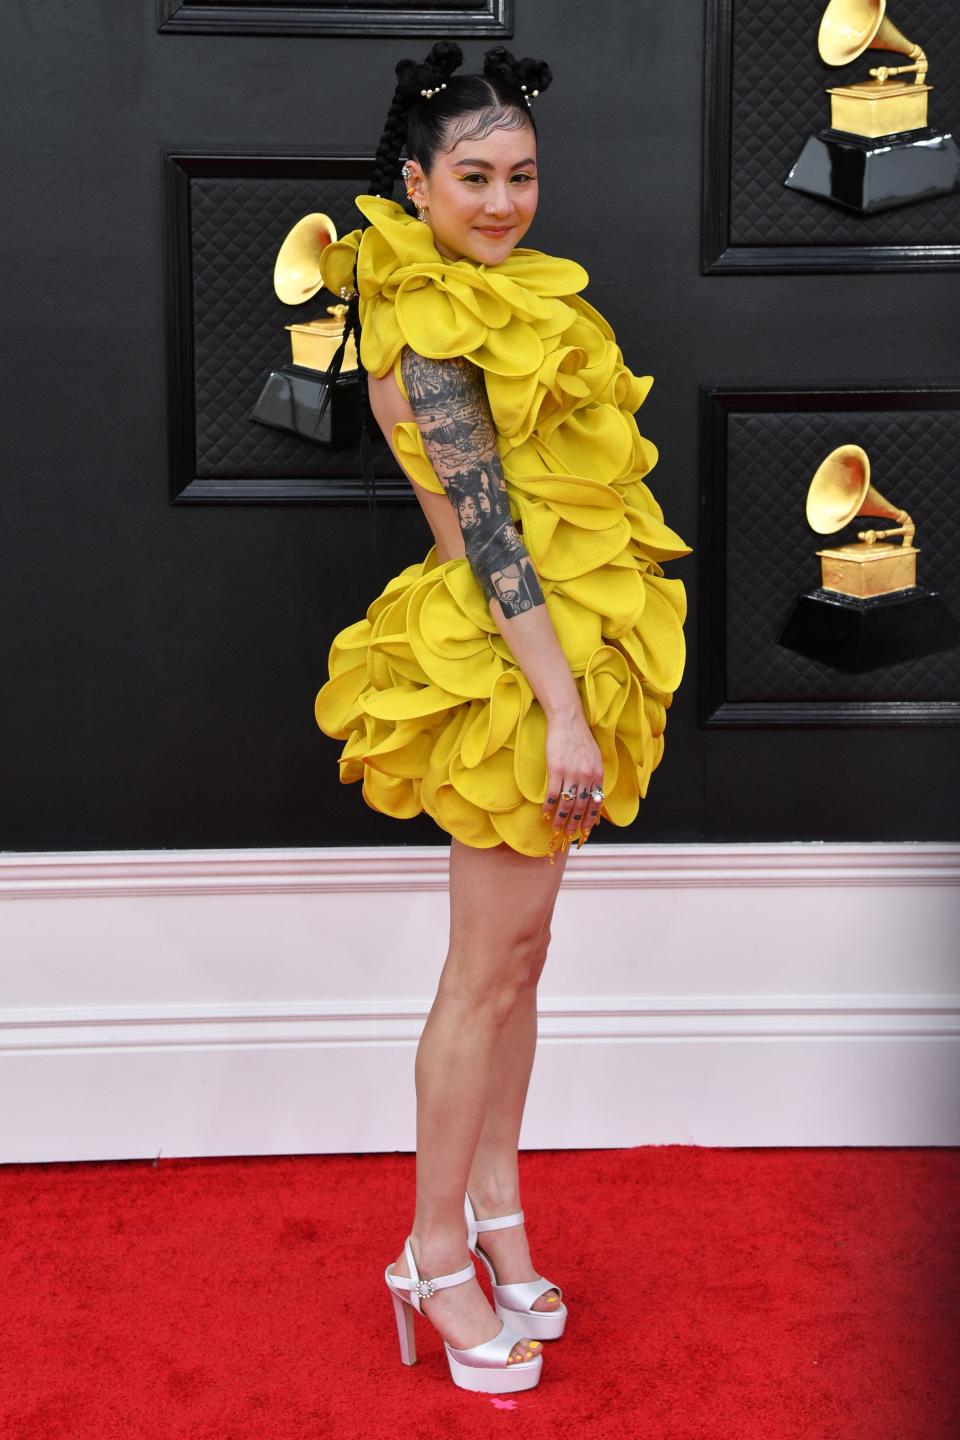 Michelle Zauner attends the Grammys Awards